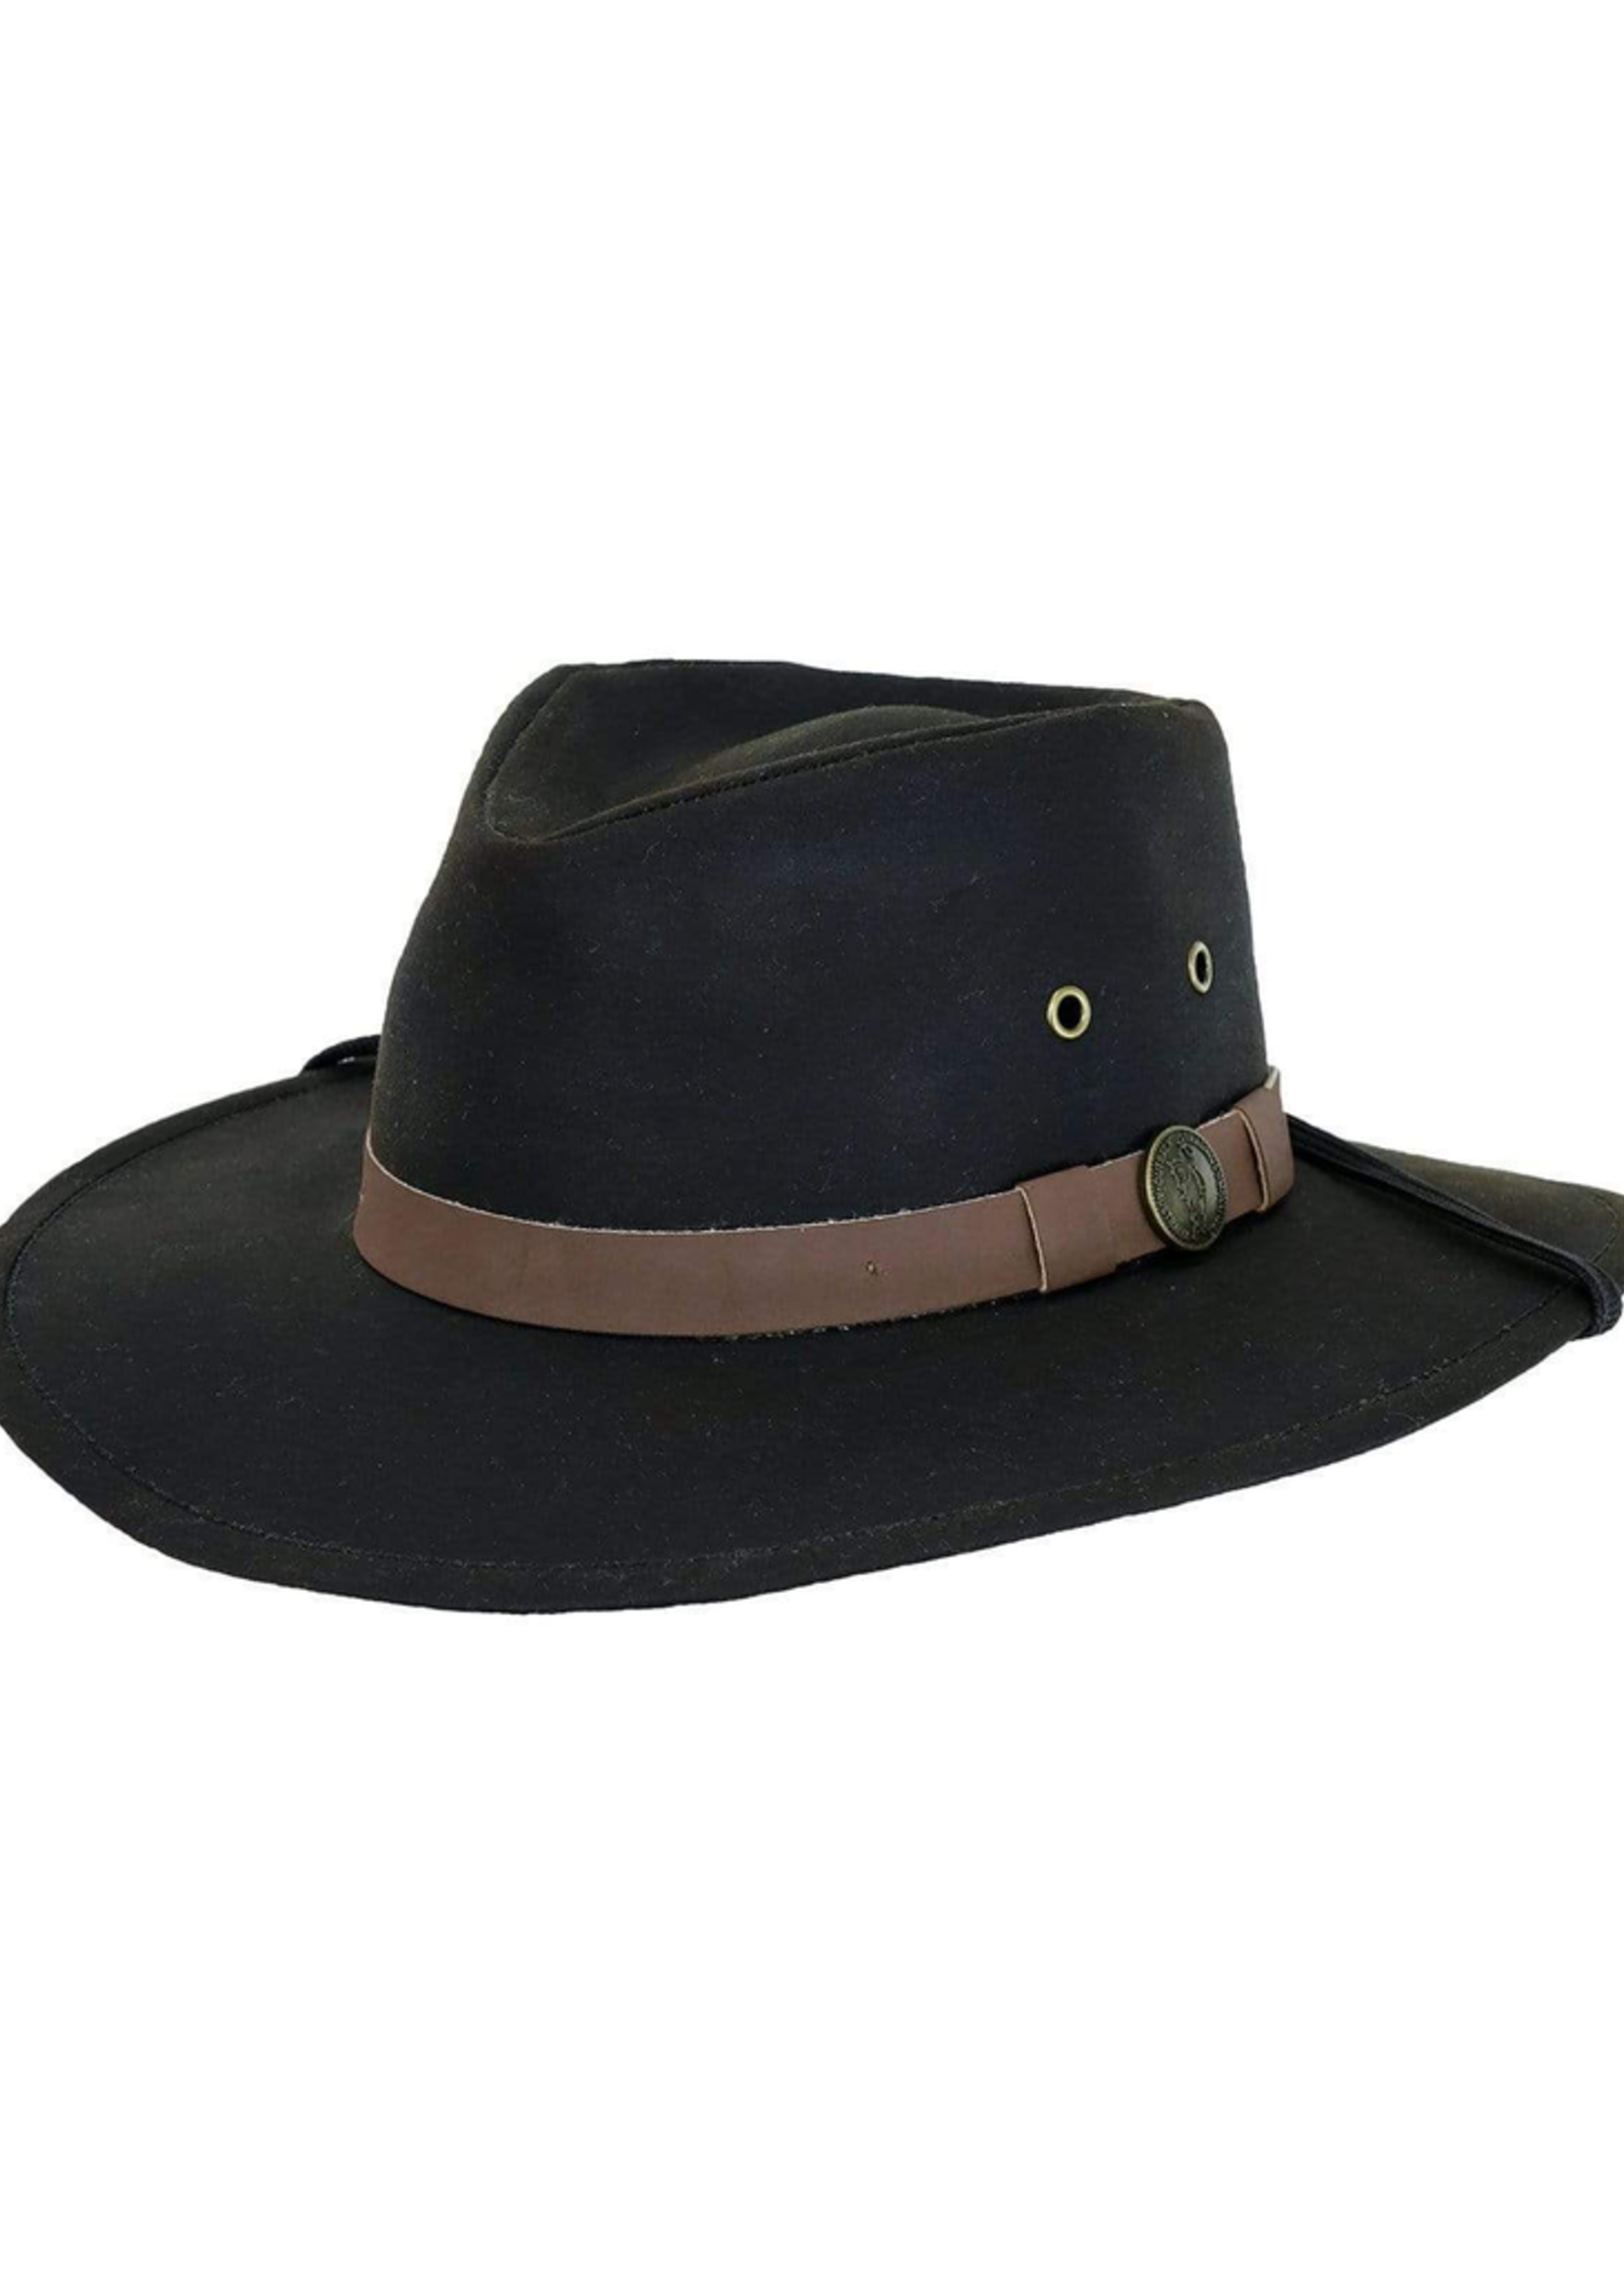 Hats OUTBACK Kodiak No.1480